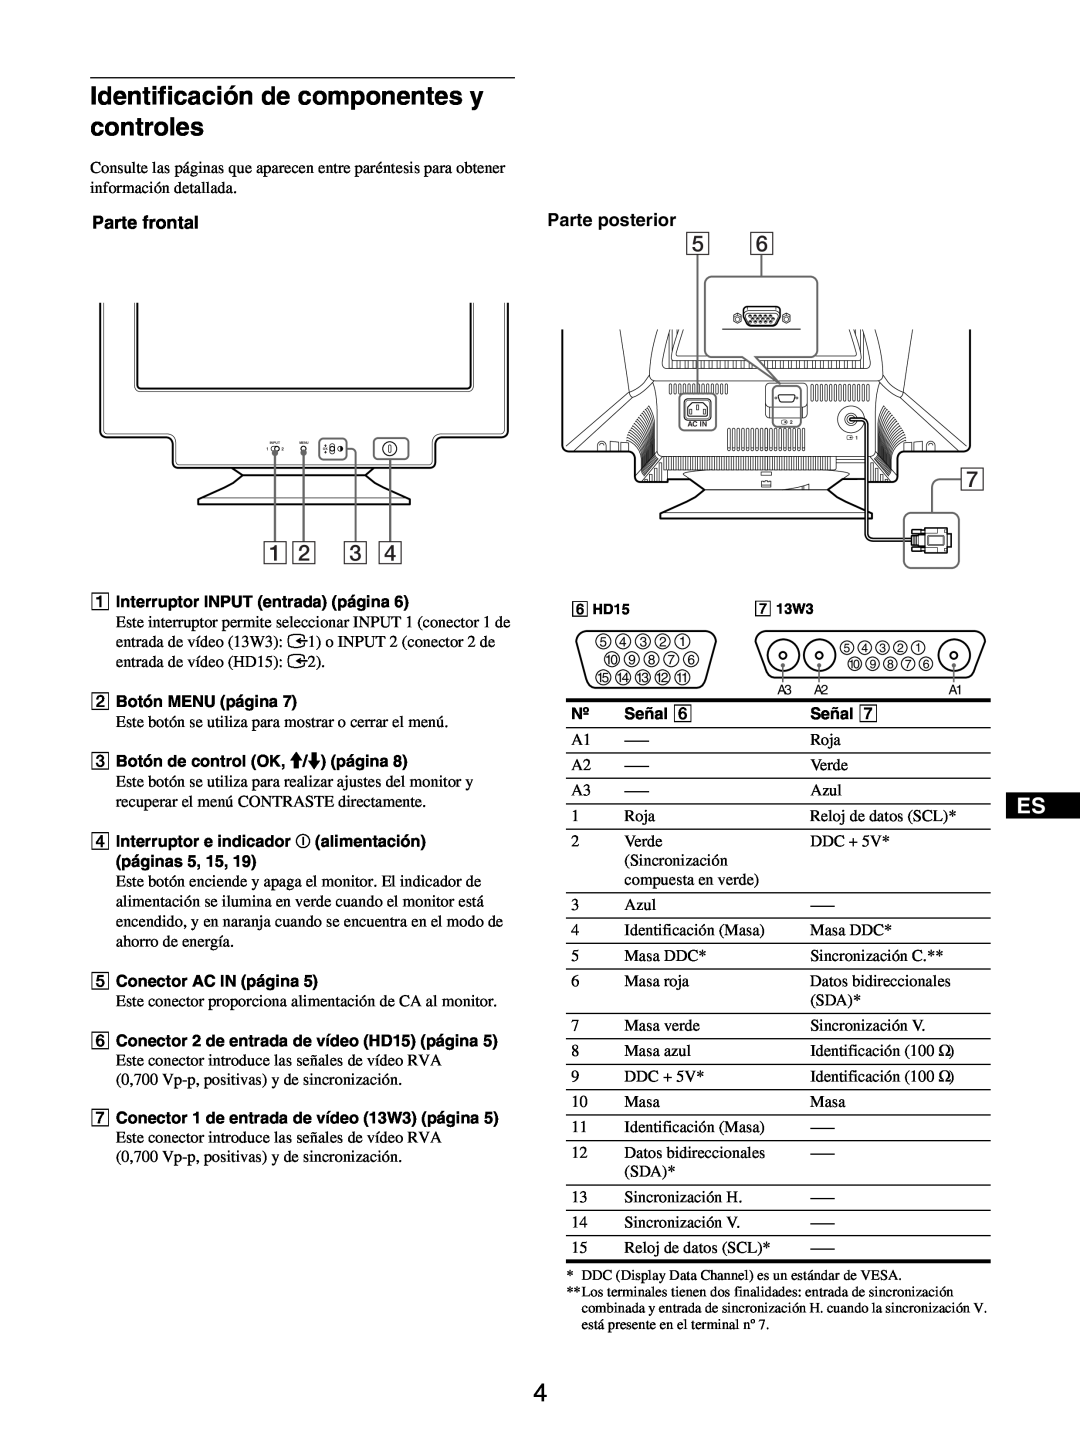 Sony GDM-5510 operating instructions Identificación de componentes y controles, 12 3, Parte frontal, Parte posterior 